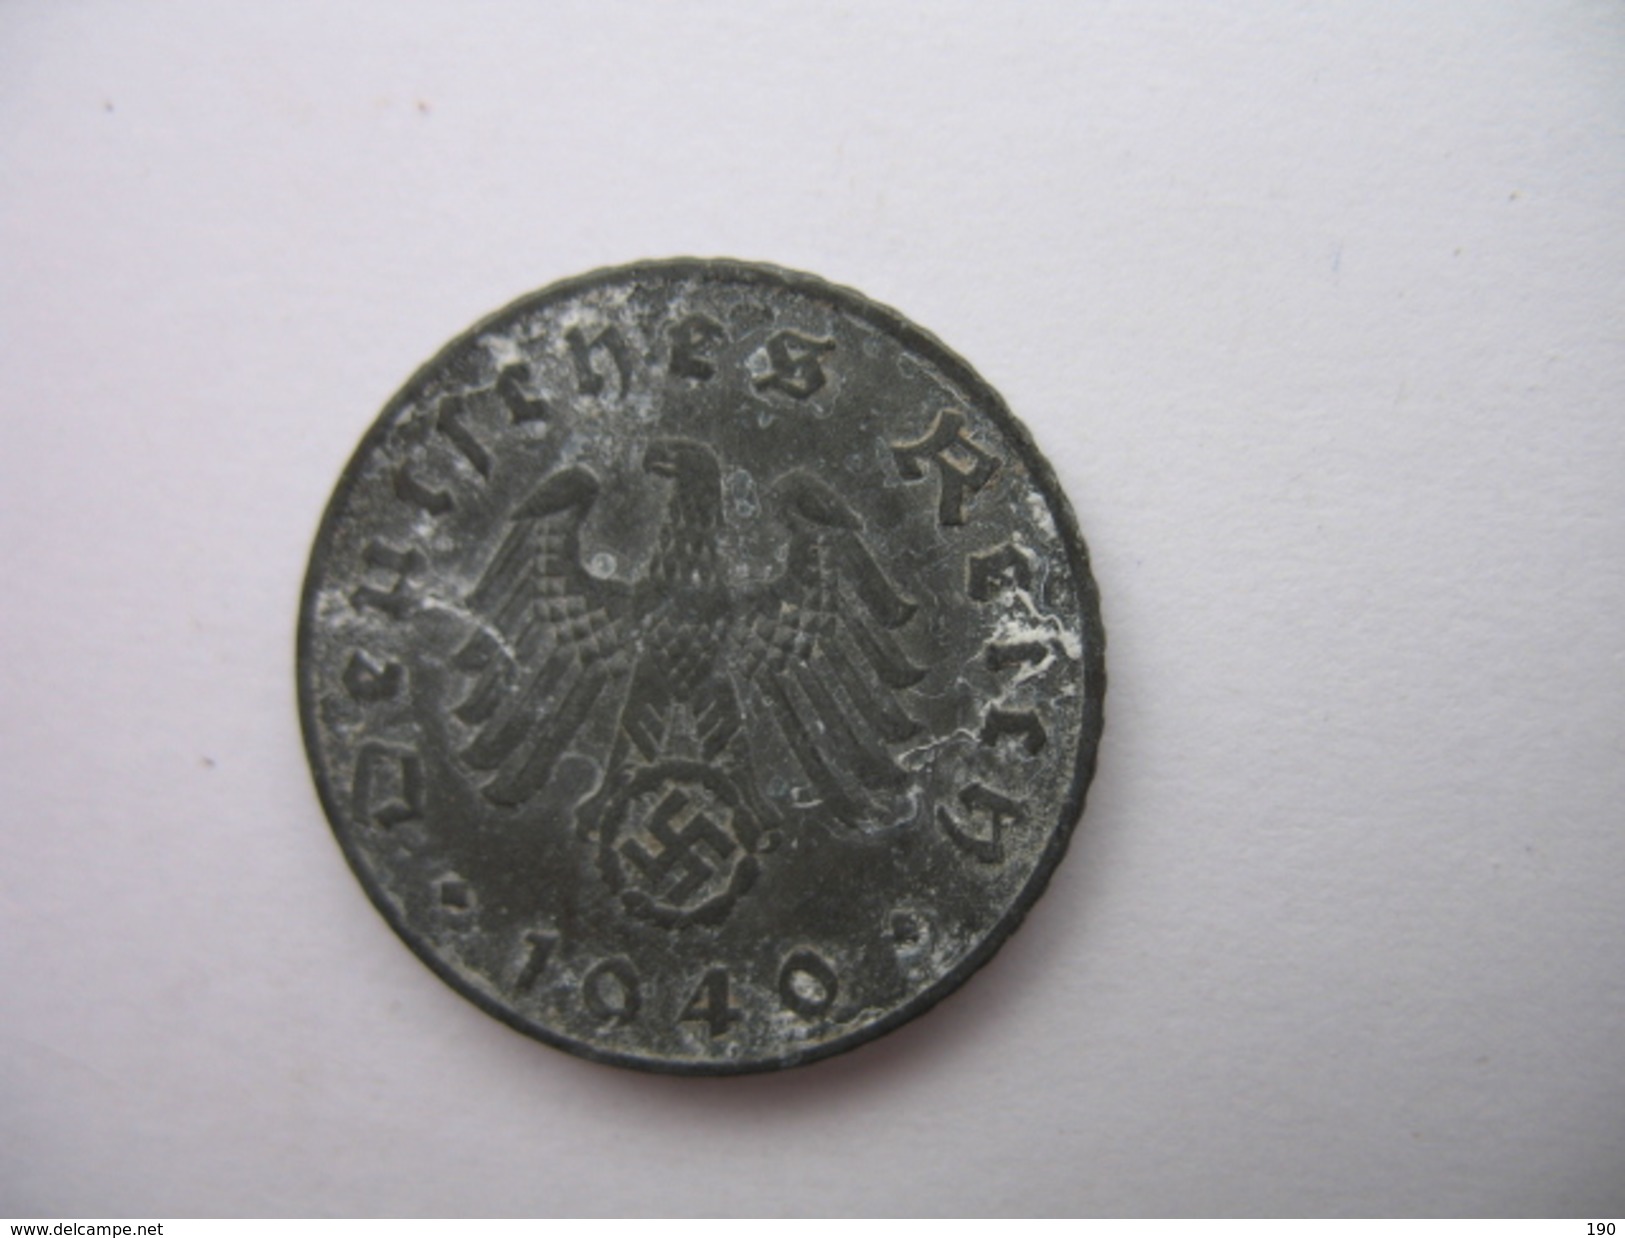 5 REICHSPFENNIG - 5 Reichspfennig